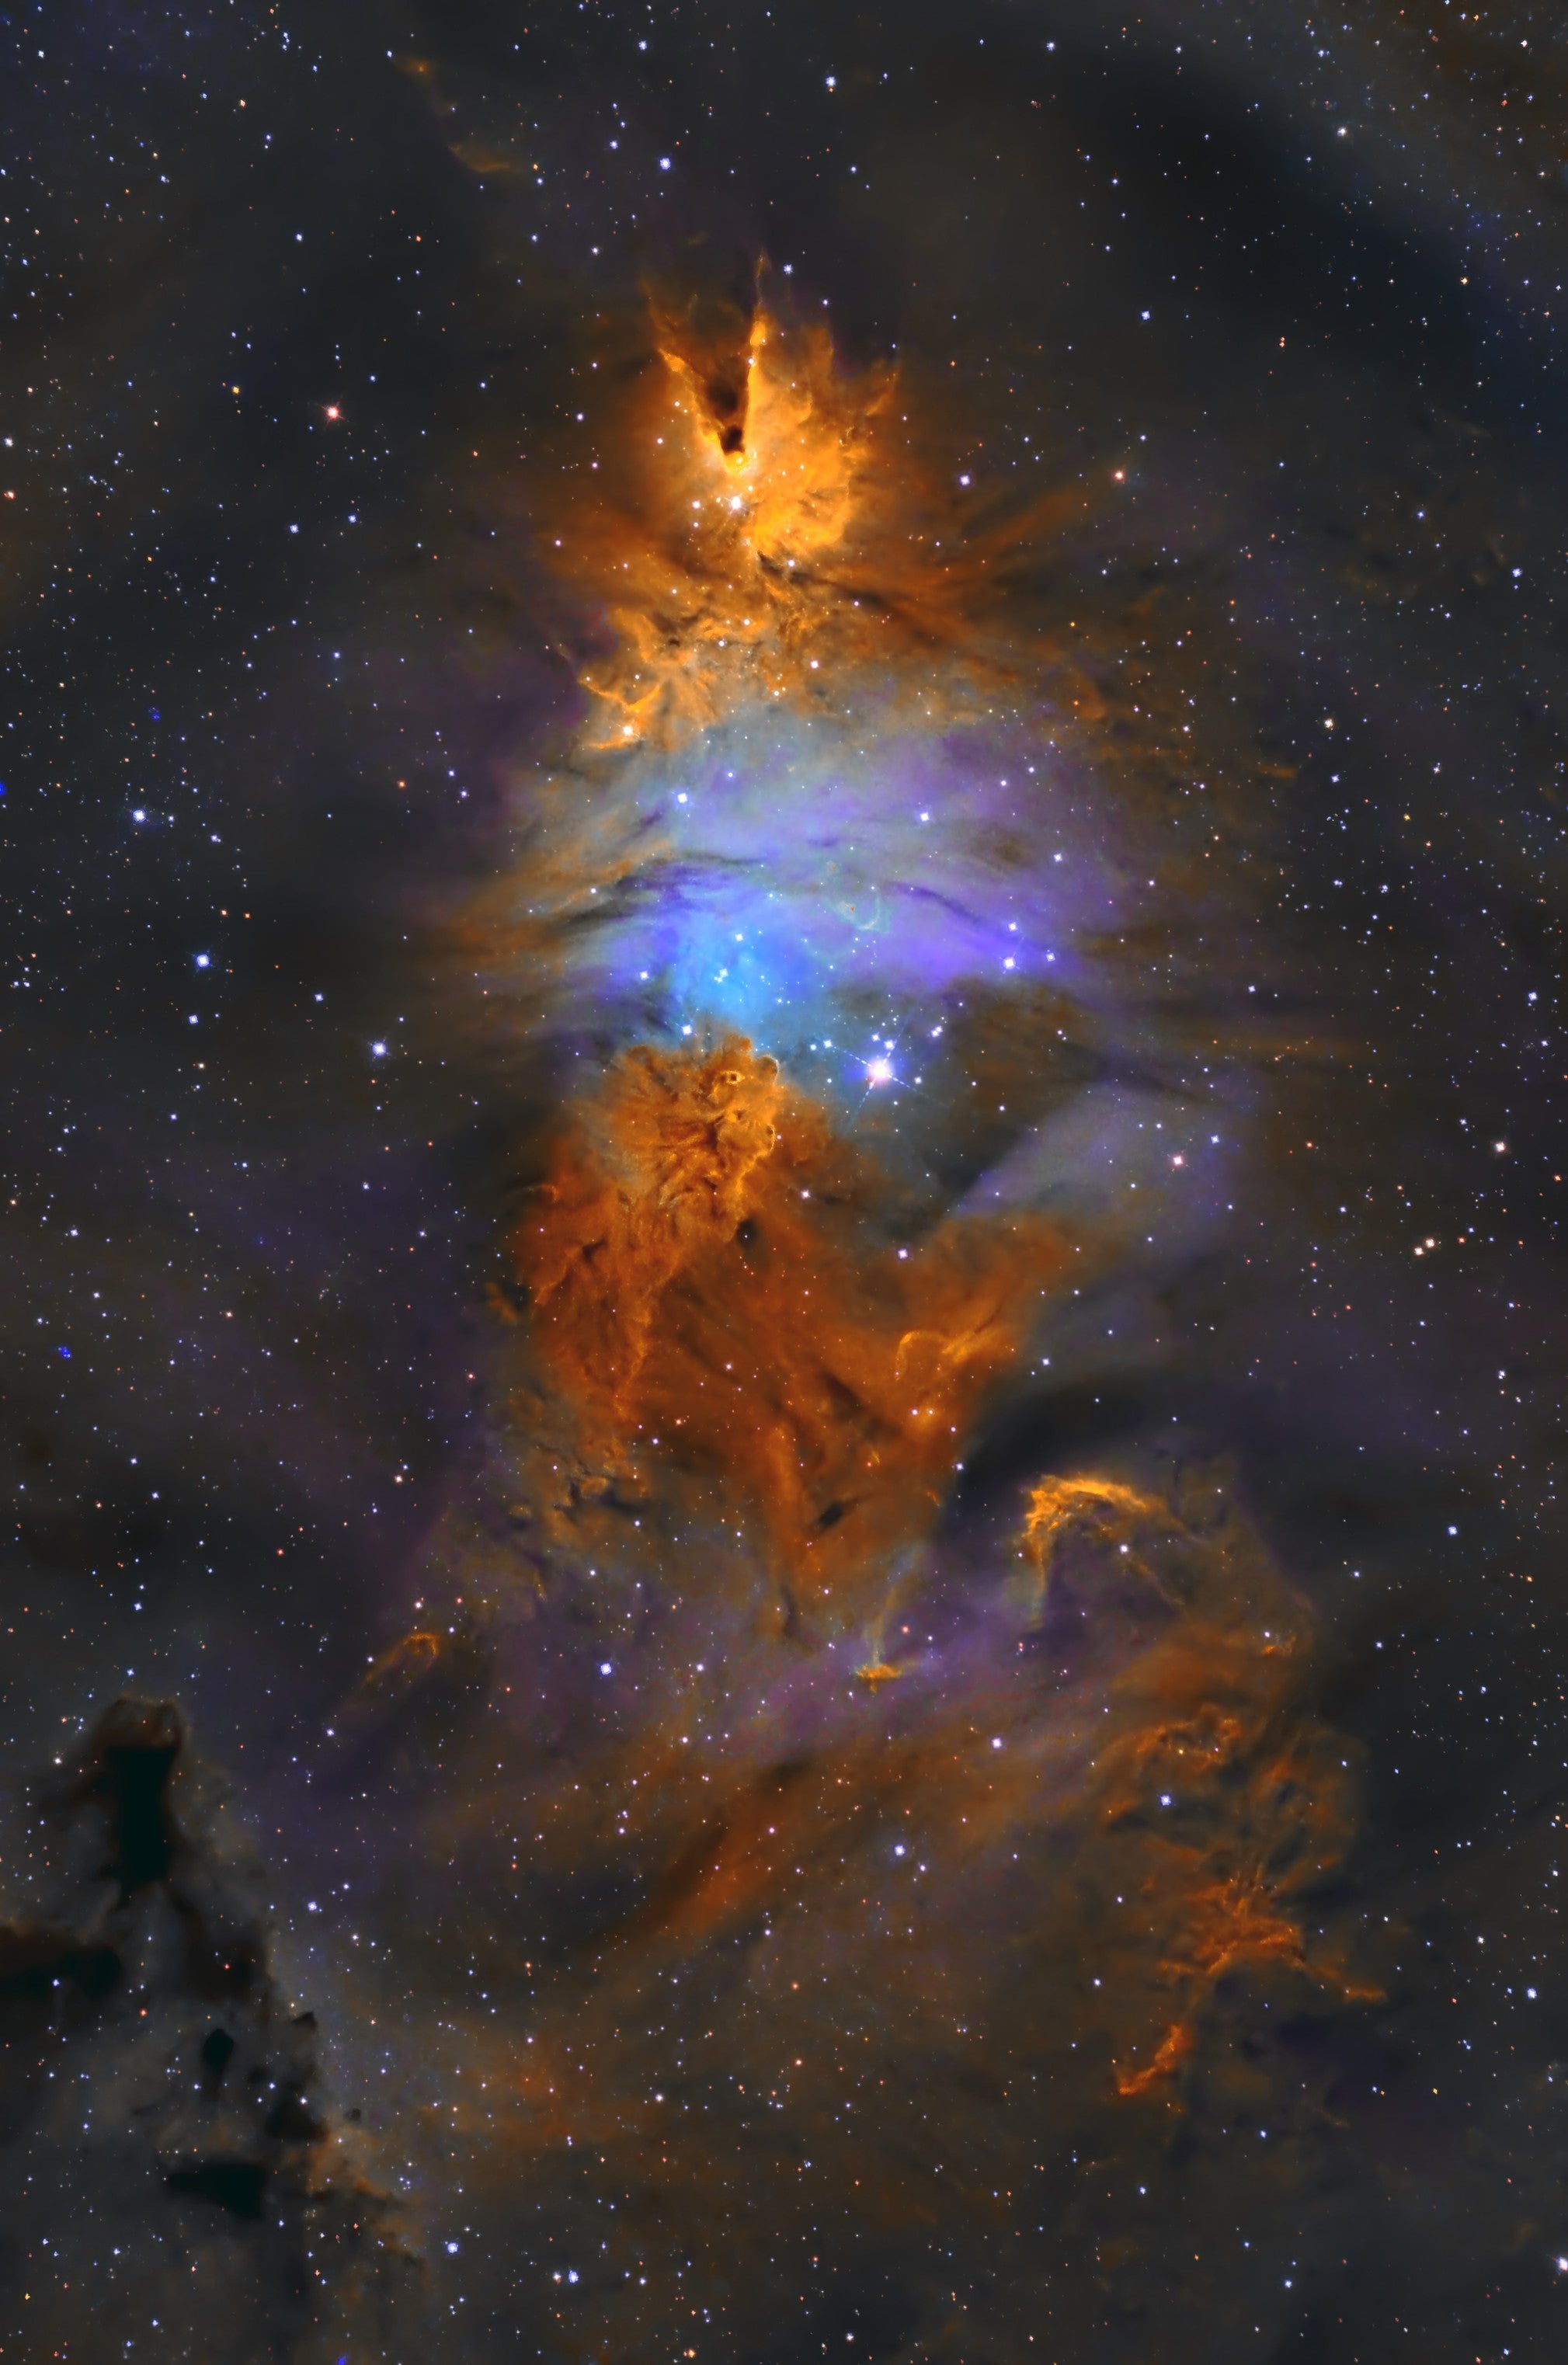 the Christmas Tree Nebula - NGC 2264